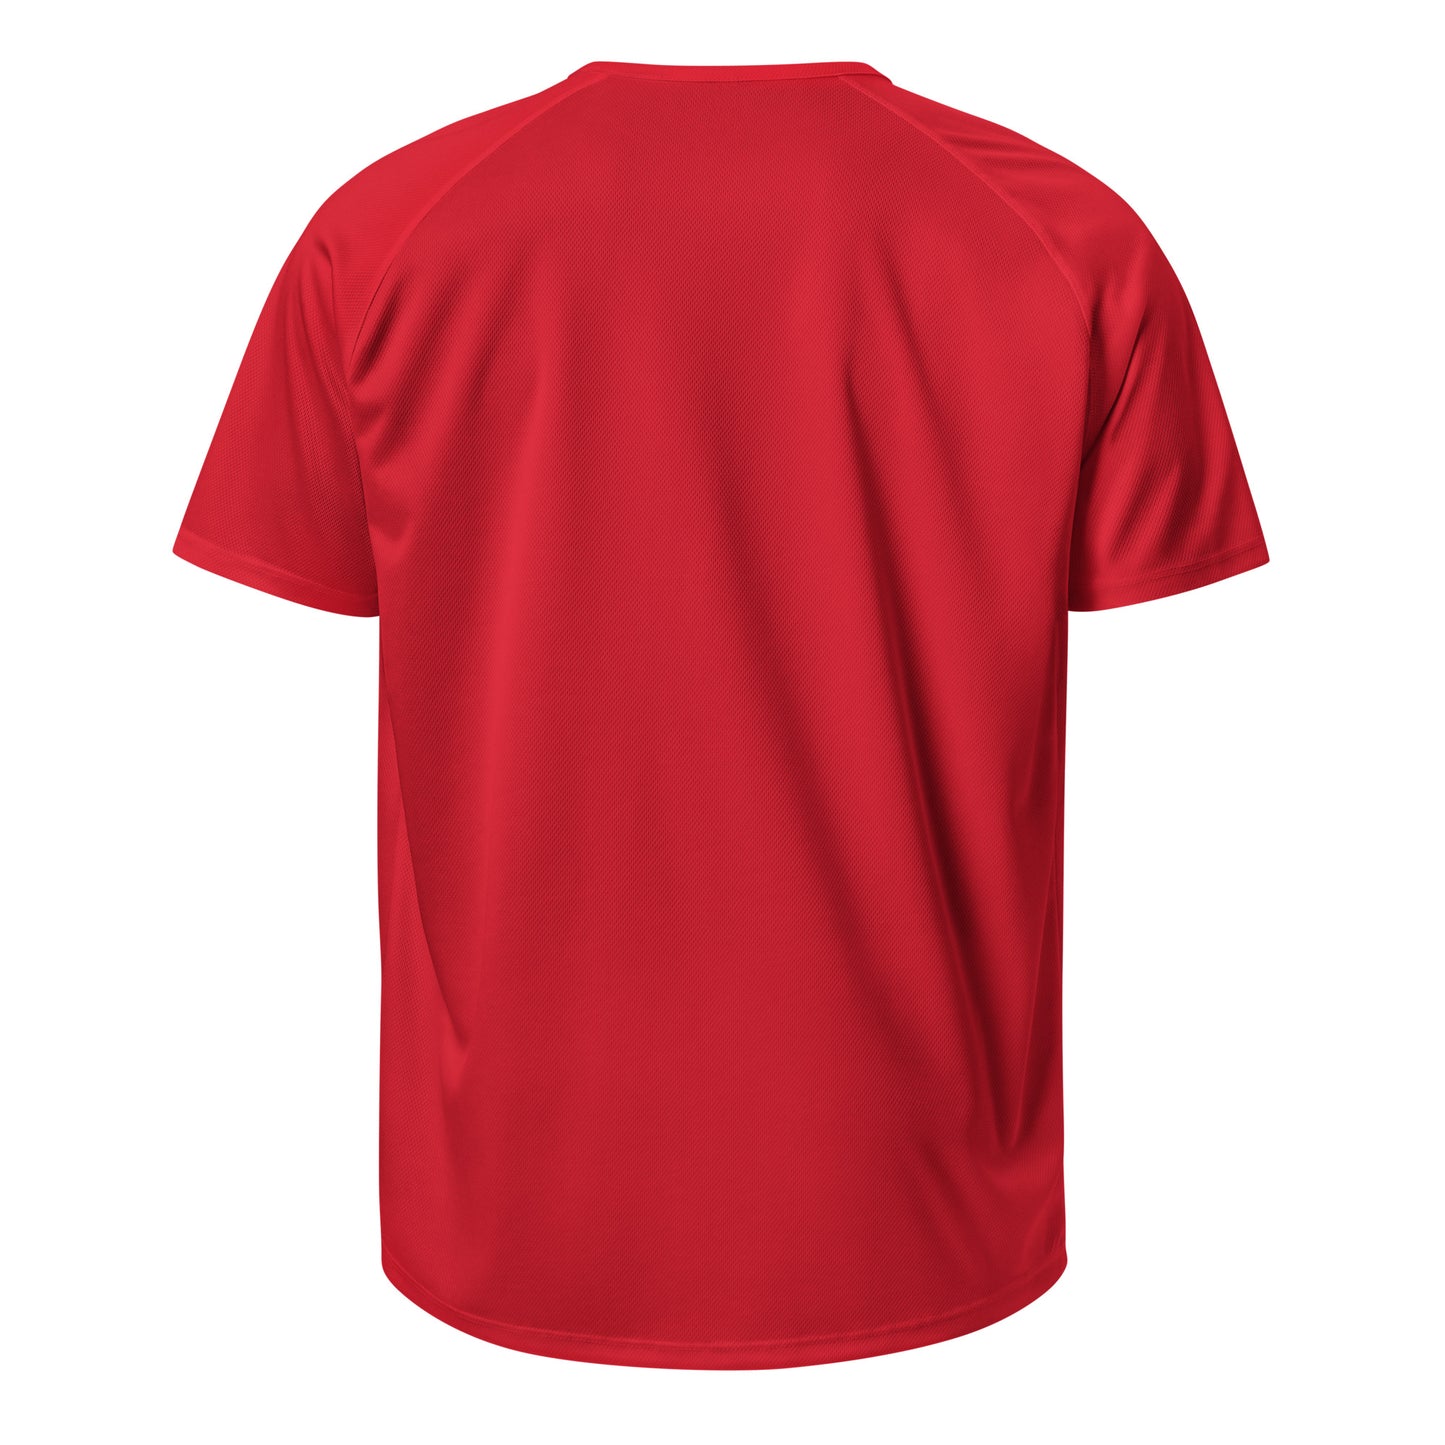 E114 - Thể thao/Vải thoáng khí (Nhảy phổ quát : Màu đỏ)